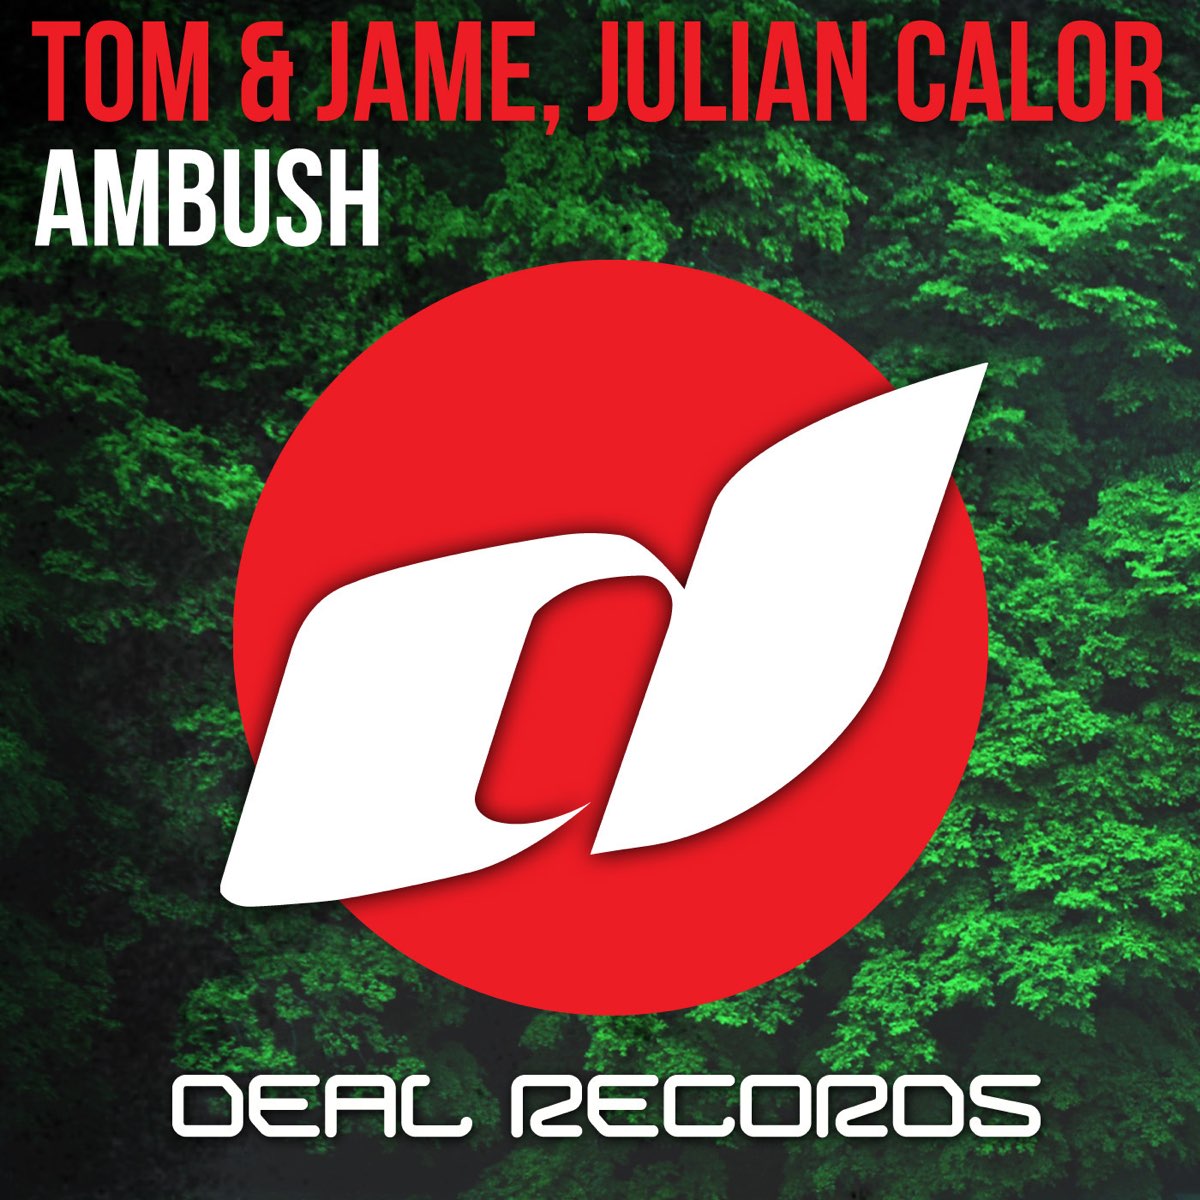 Засада песня. Tom Jame. Julian calor - Typhoon (Original Mix).